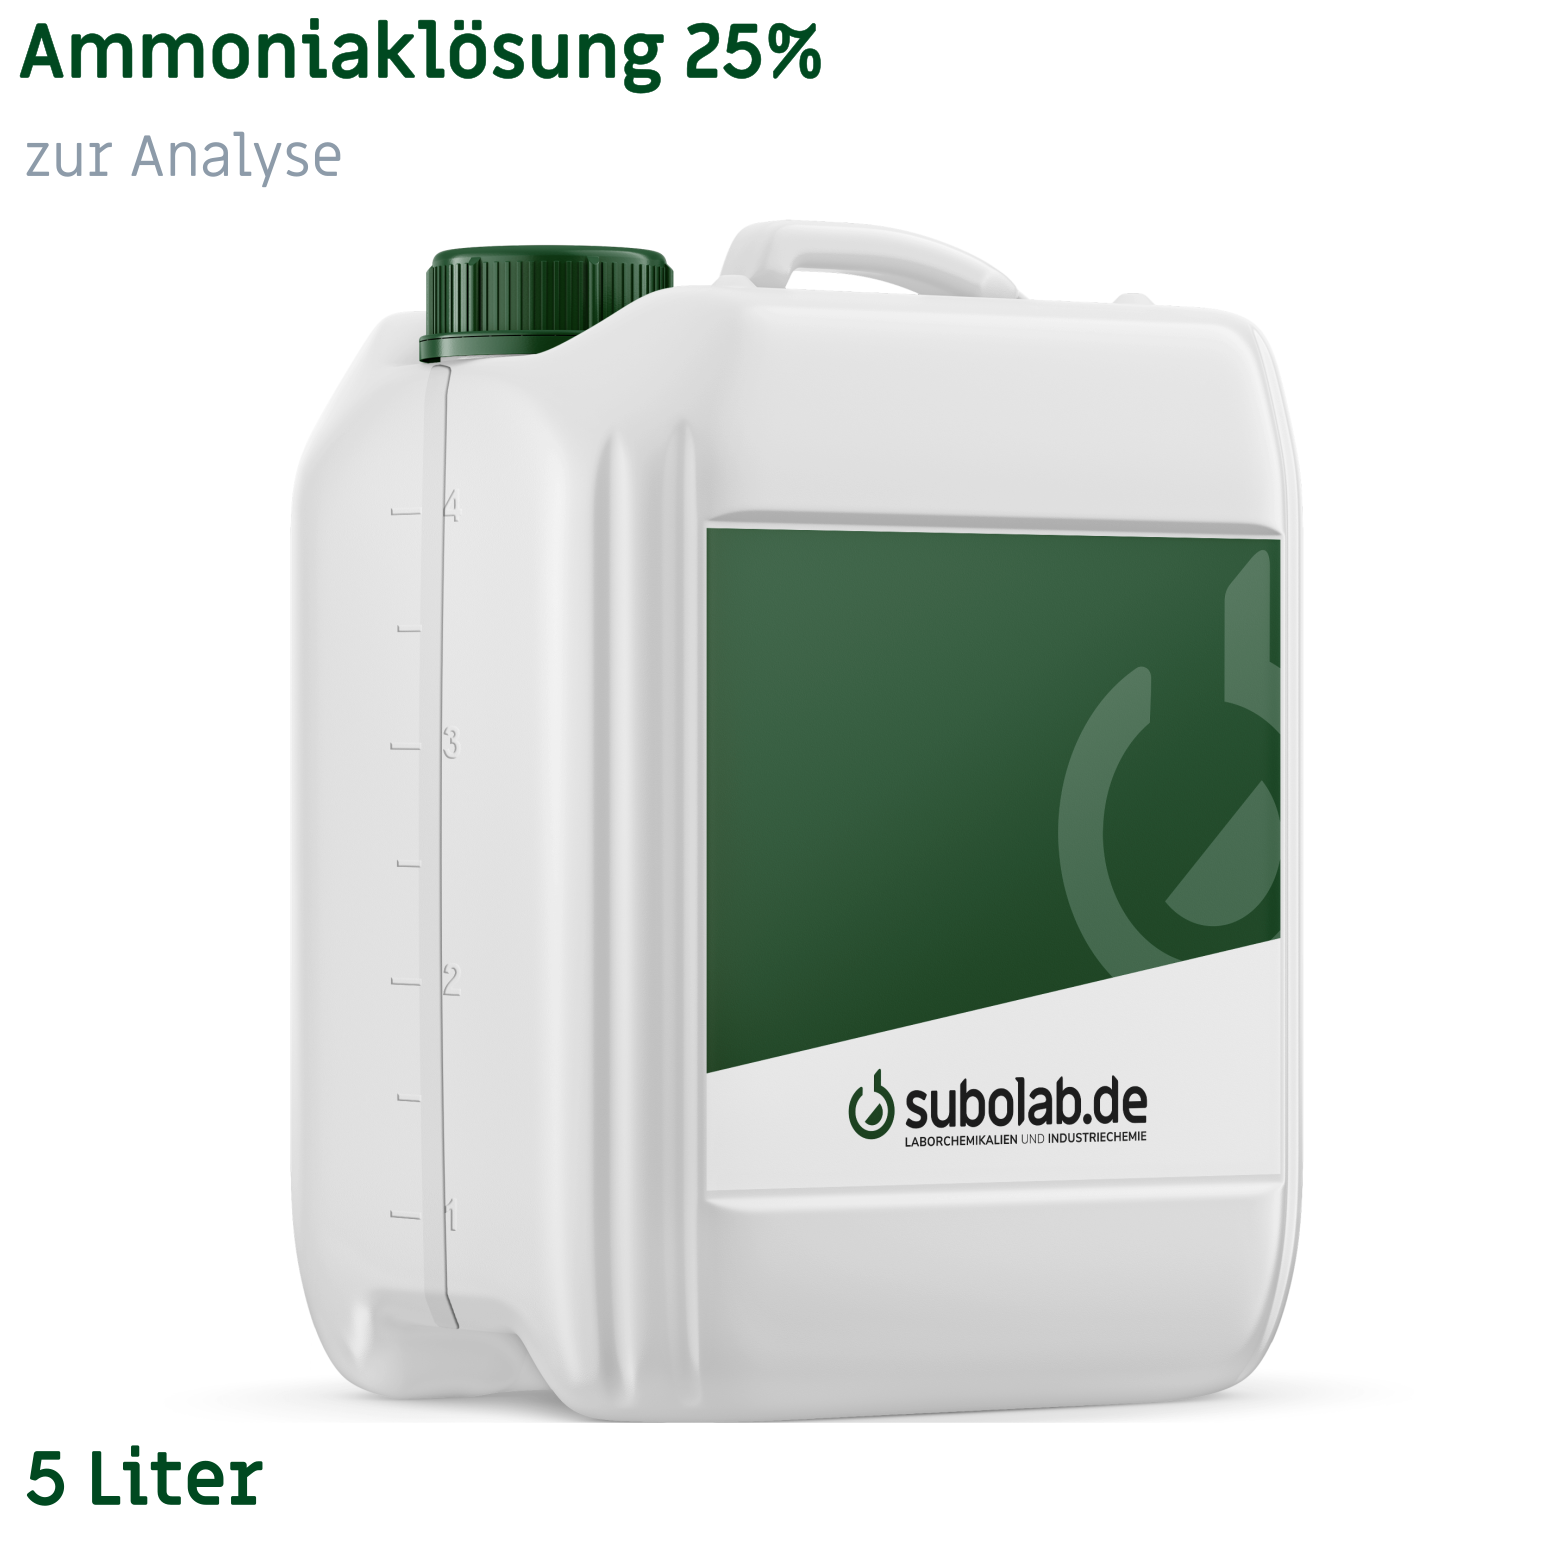 Bild von Ammoniaklösung 25% zur Analyse (5 Liter)